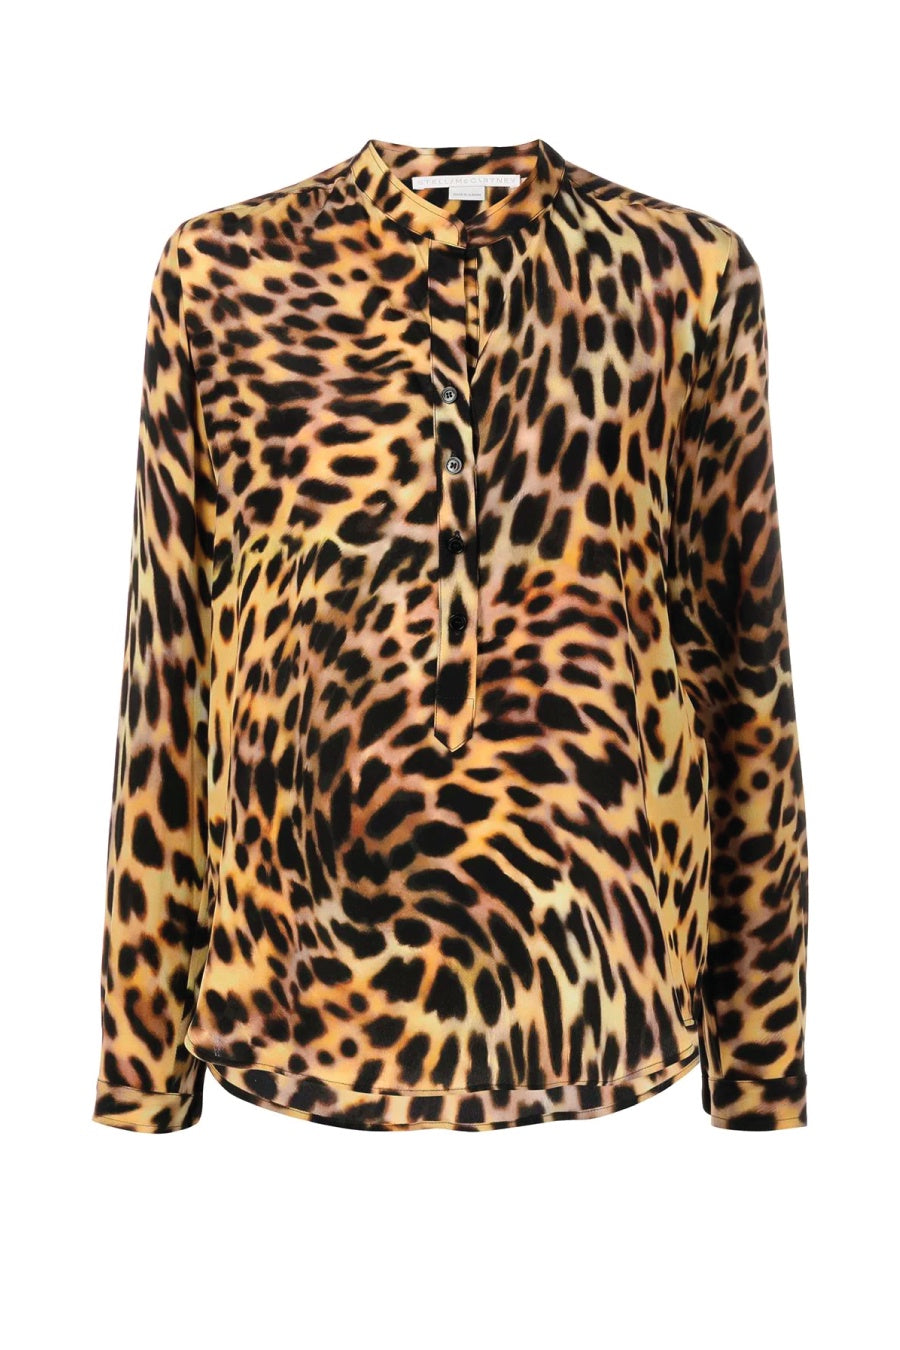 Stella McCartney Cheetah Print Collarless Silk Shirt - Tortoiseshell